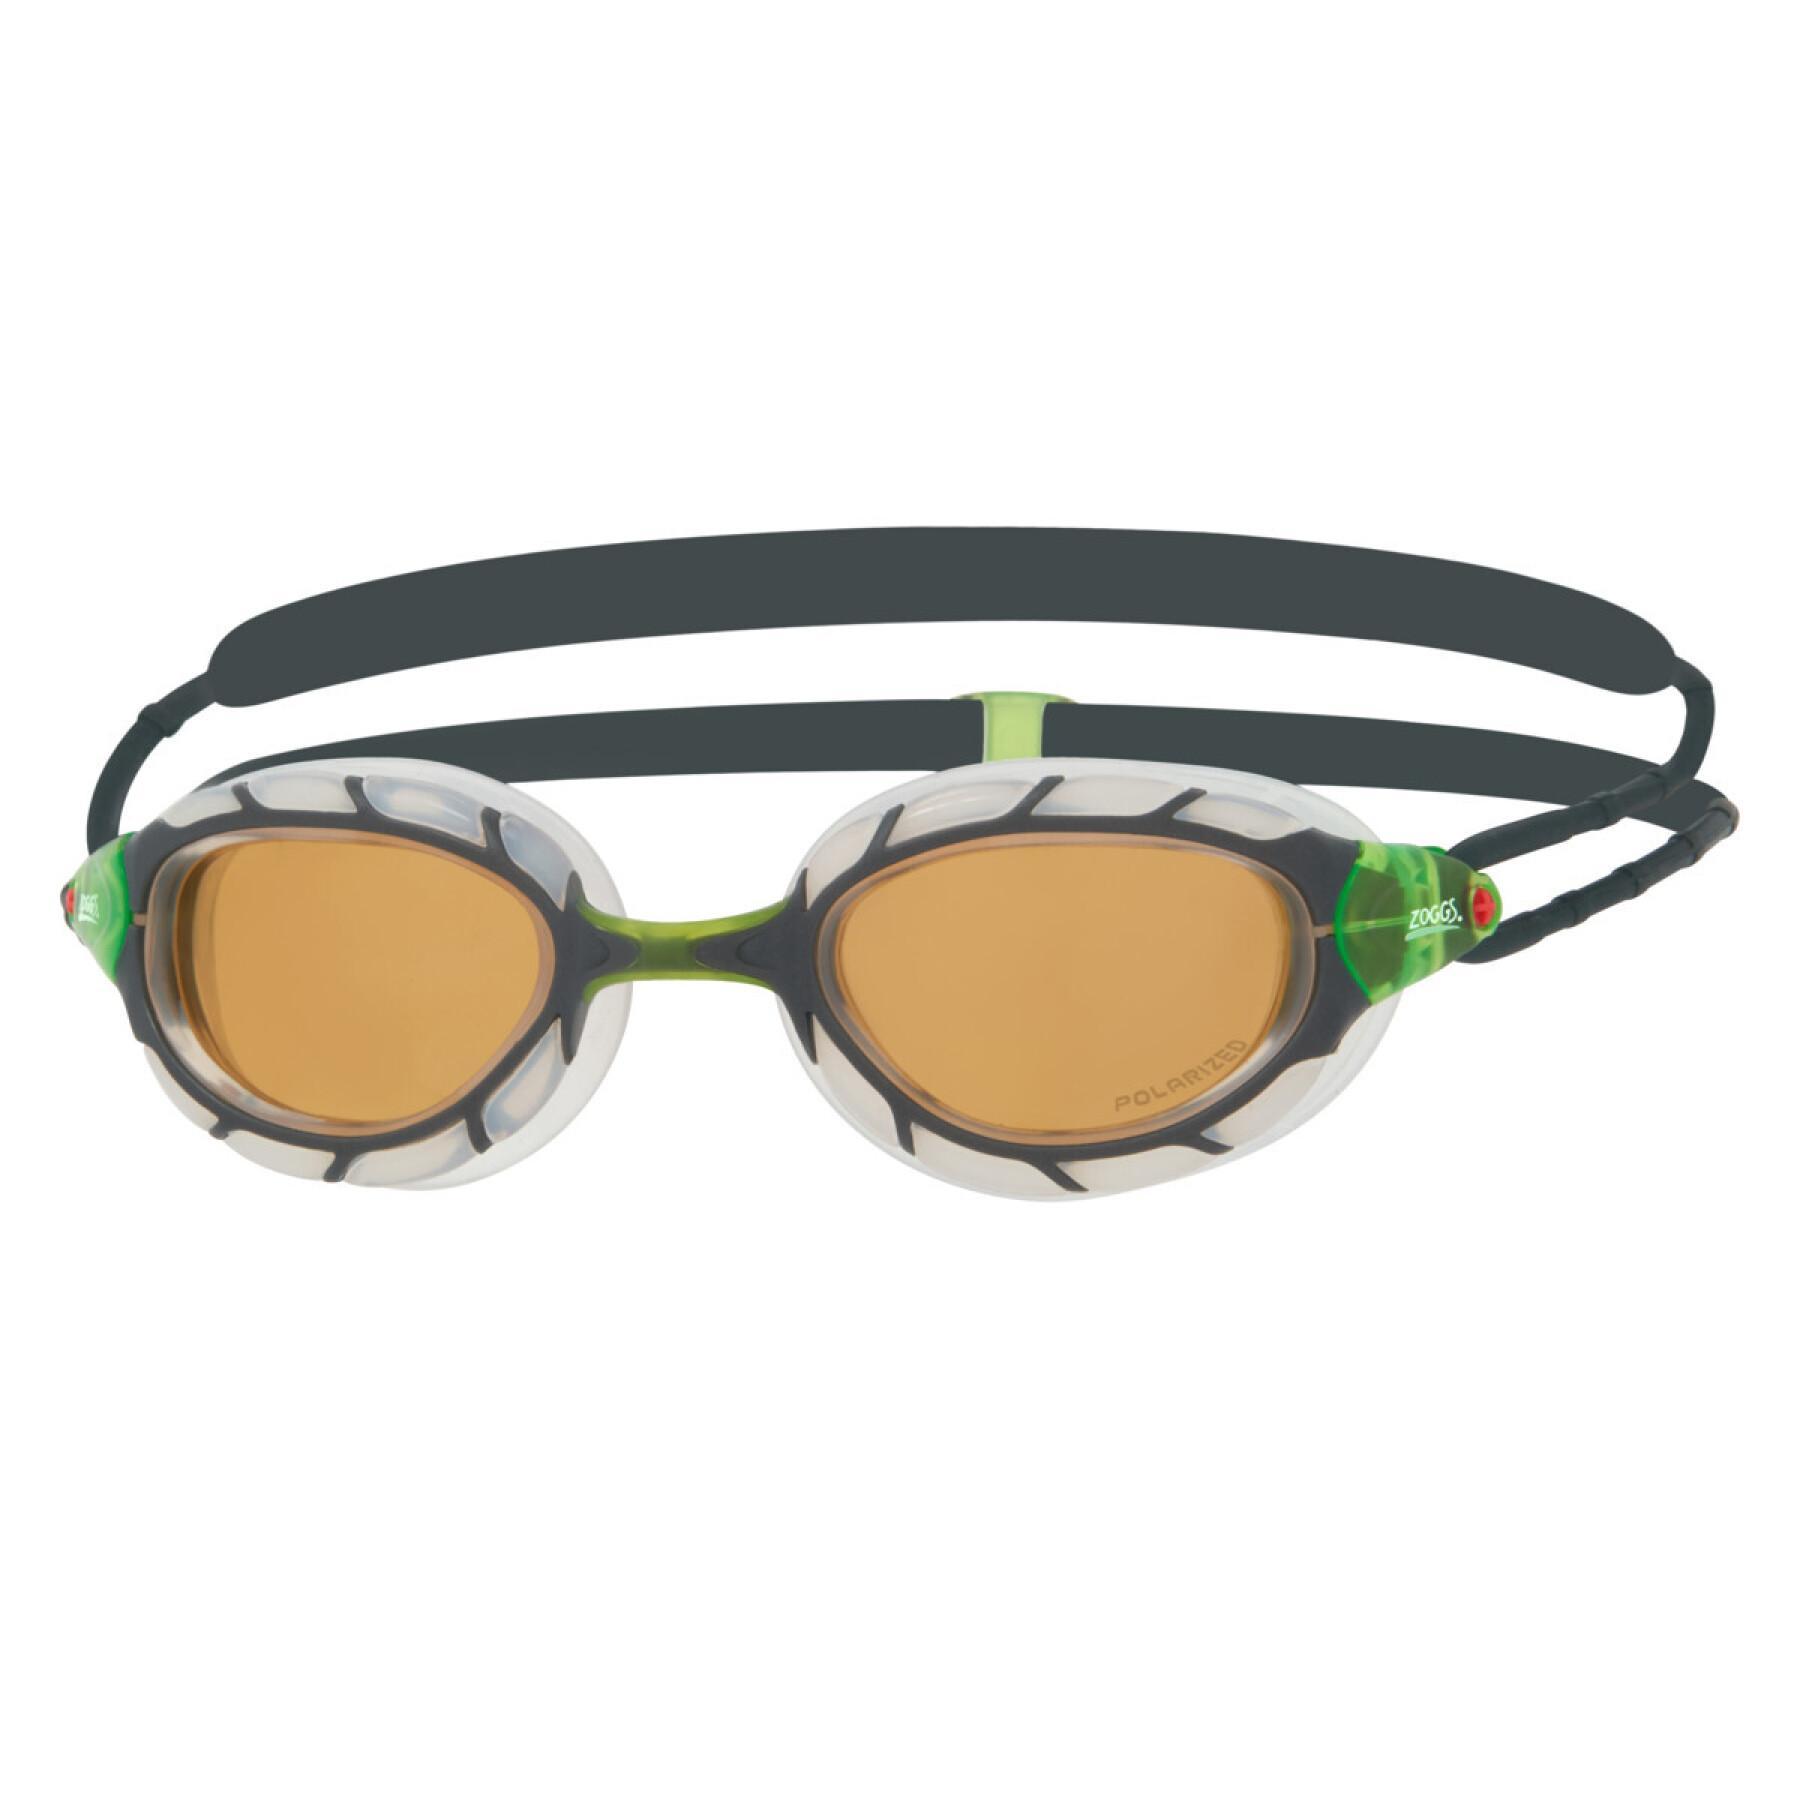 Gafas de natación ultra polarizadas Zoggs Predator